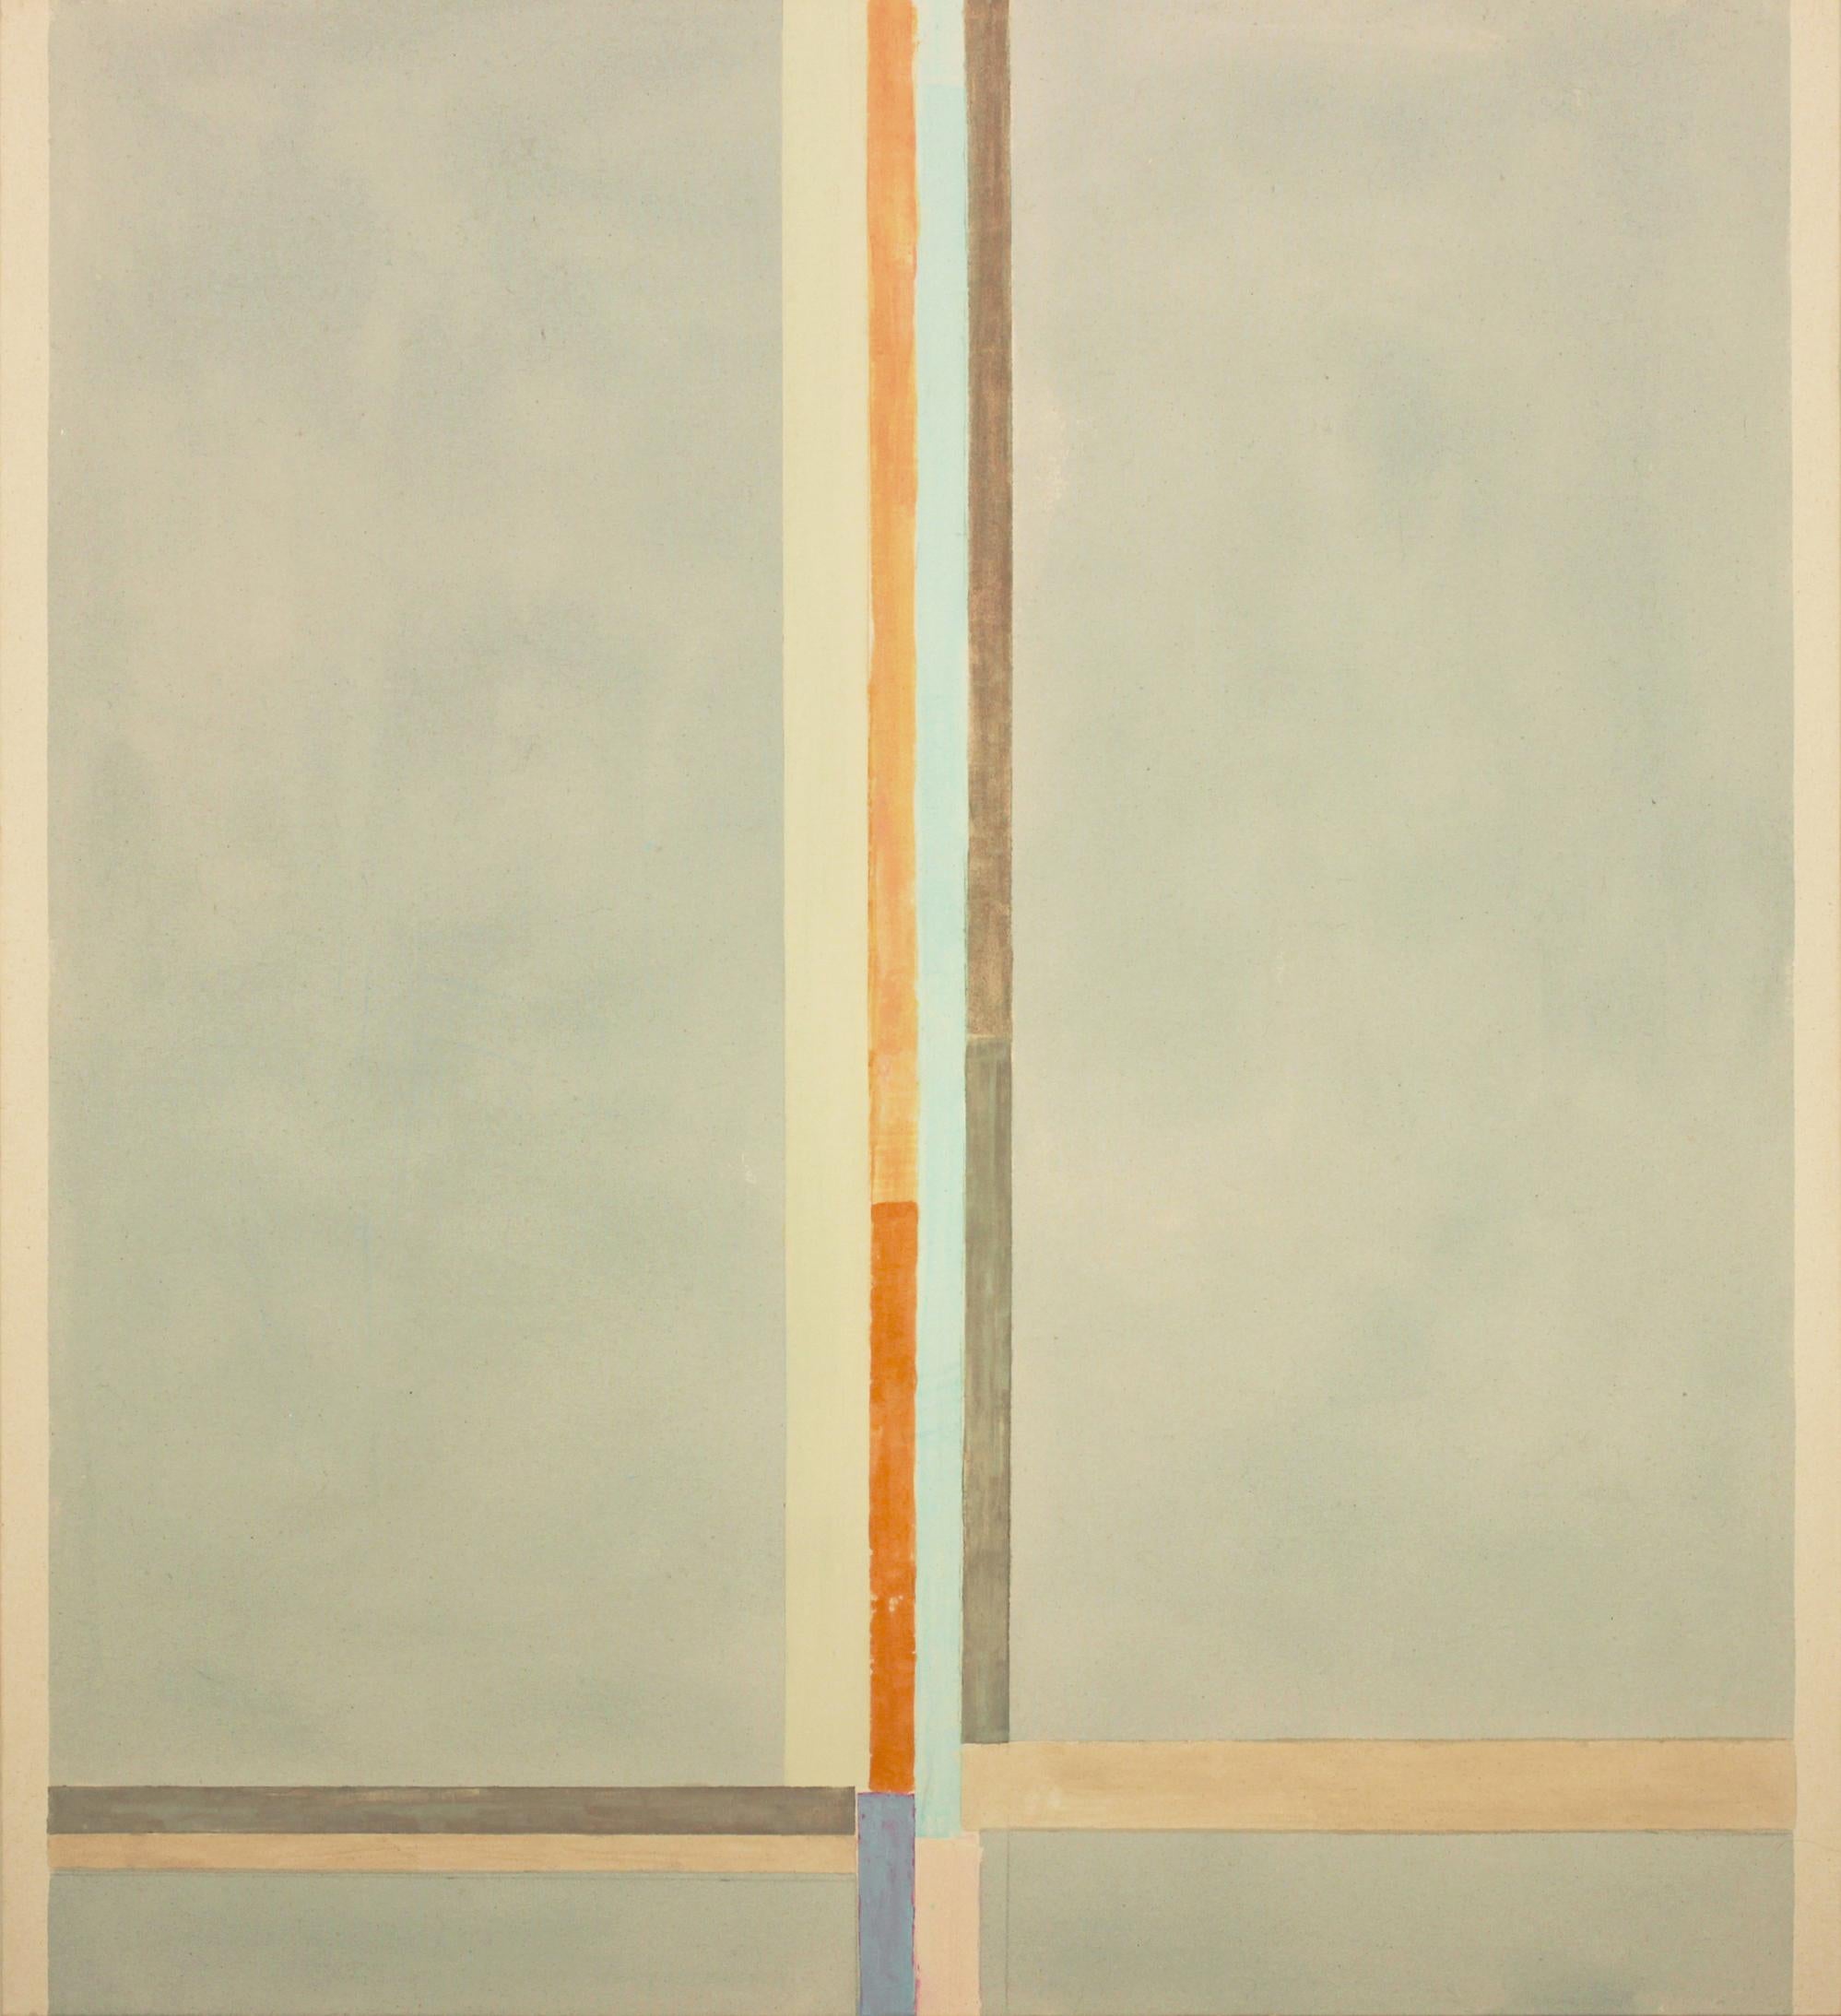 Elizabeth Gourlay Abstract Painting – Abstraktes Gemälde in Blau, Beige, Hellblau, Braun, Orange und Grau mit Streifen